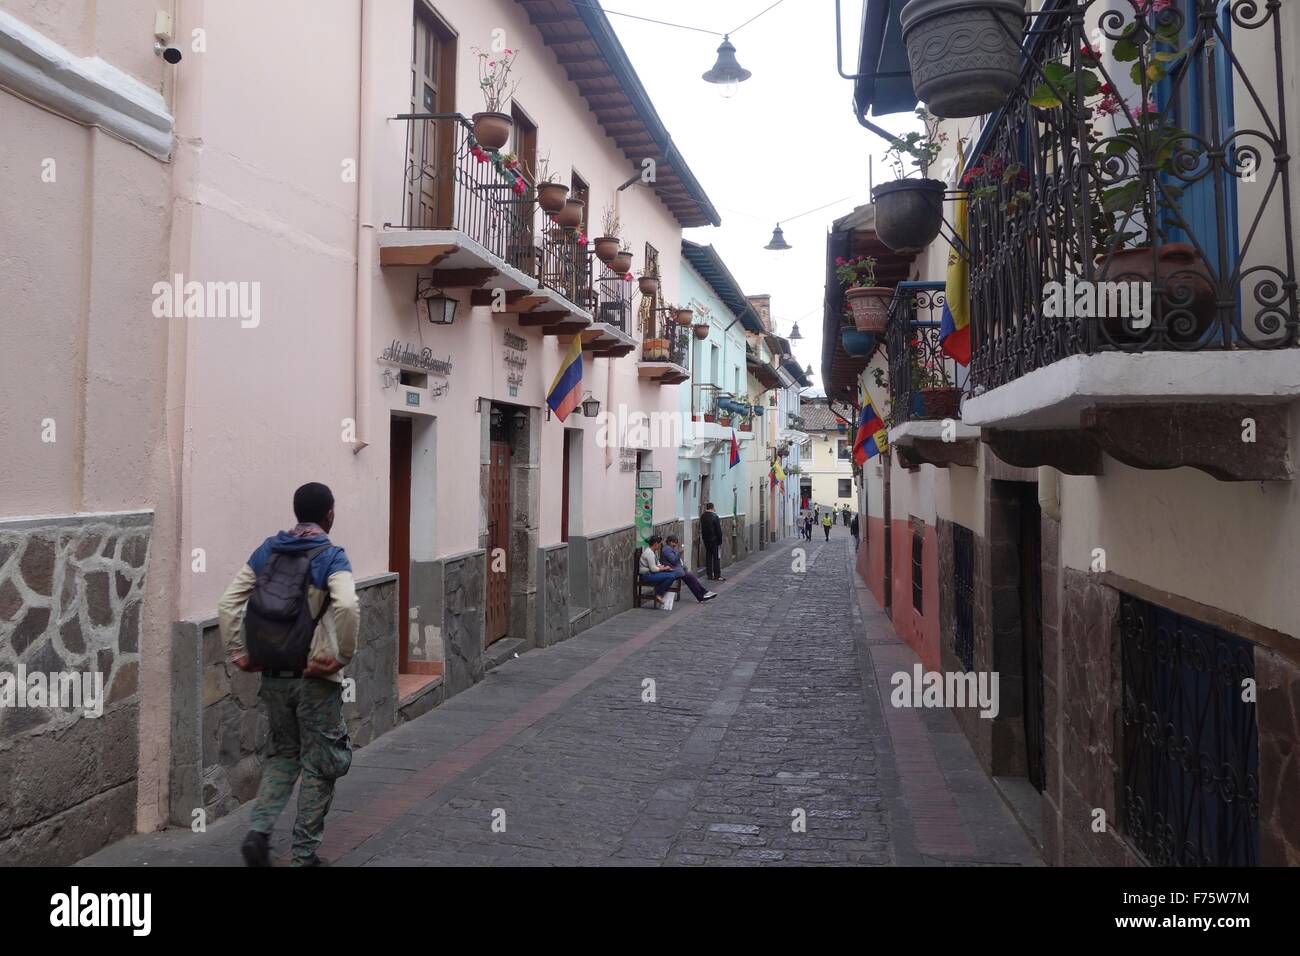 Calle de la Ronda, a charming colonial street in the historic center of Quito, Ecuador Stock Photo